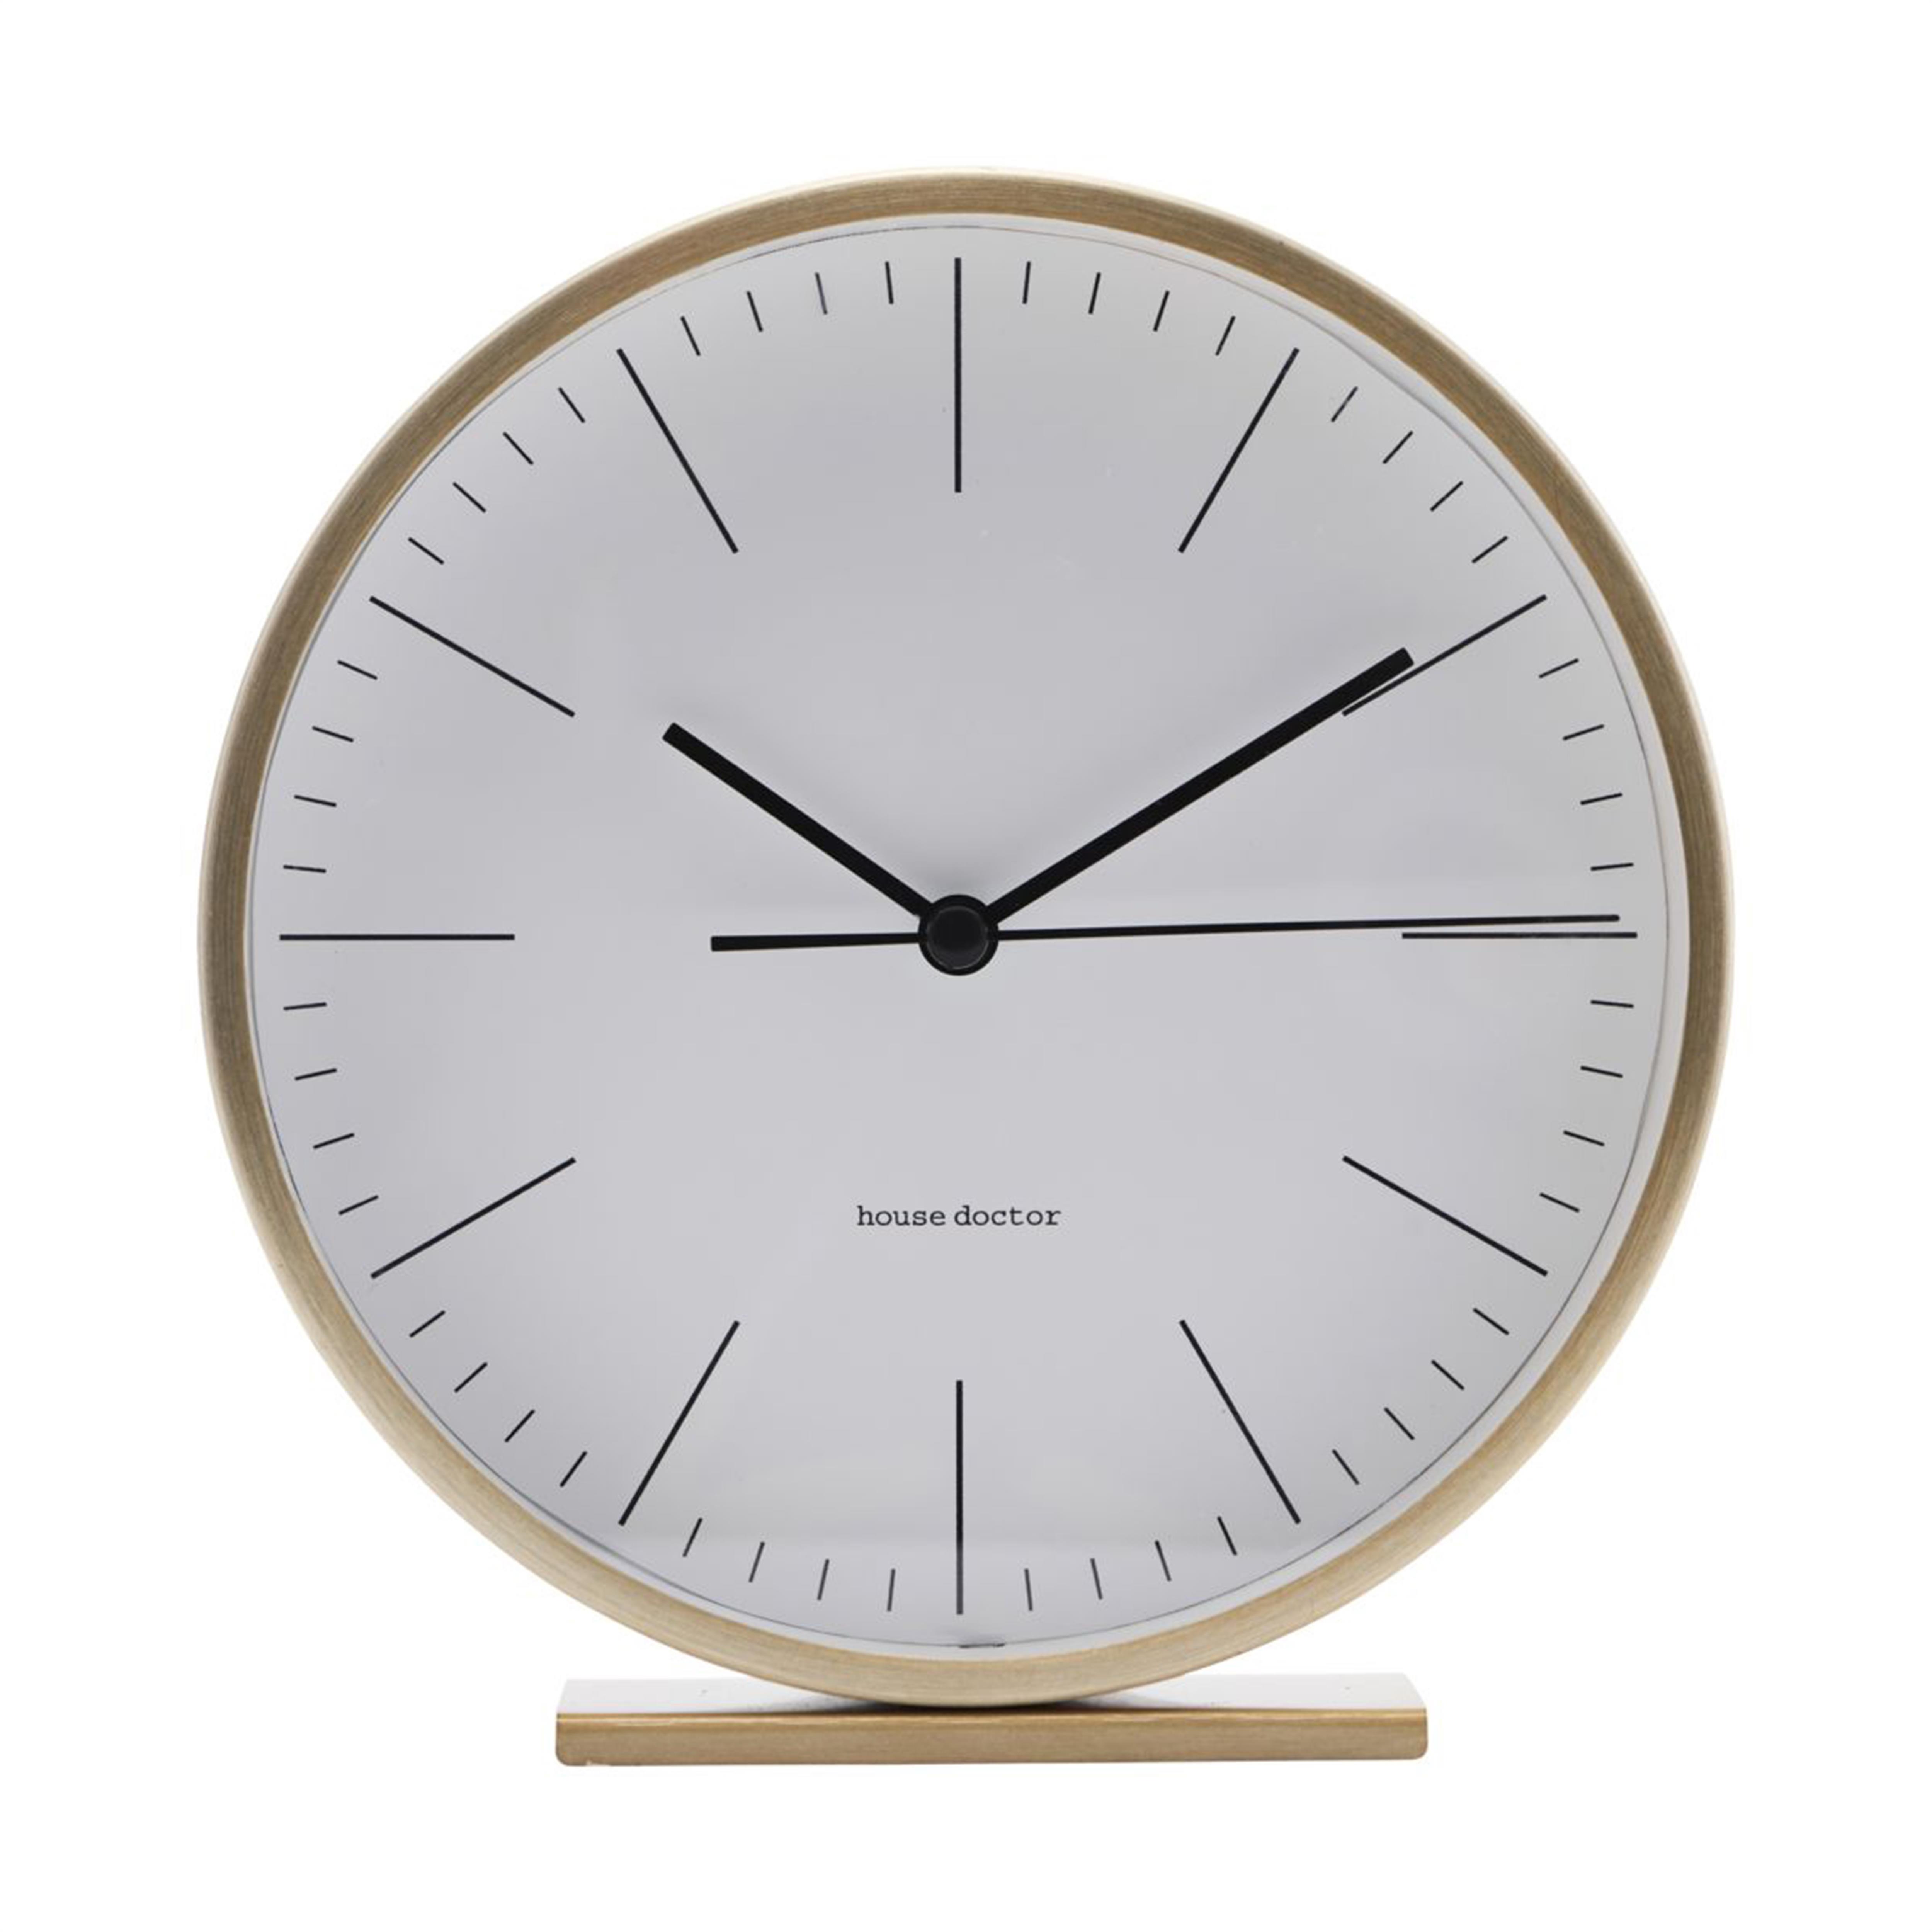 Mantel Clocks, Desk Clocks & Table Clocks | Buy Online at Nordic Nest